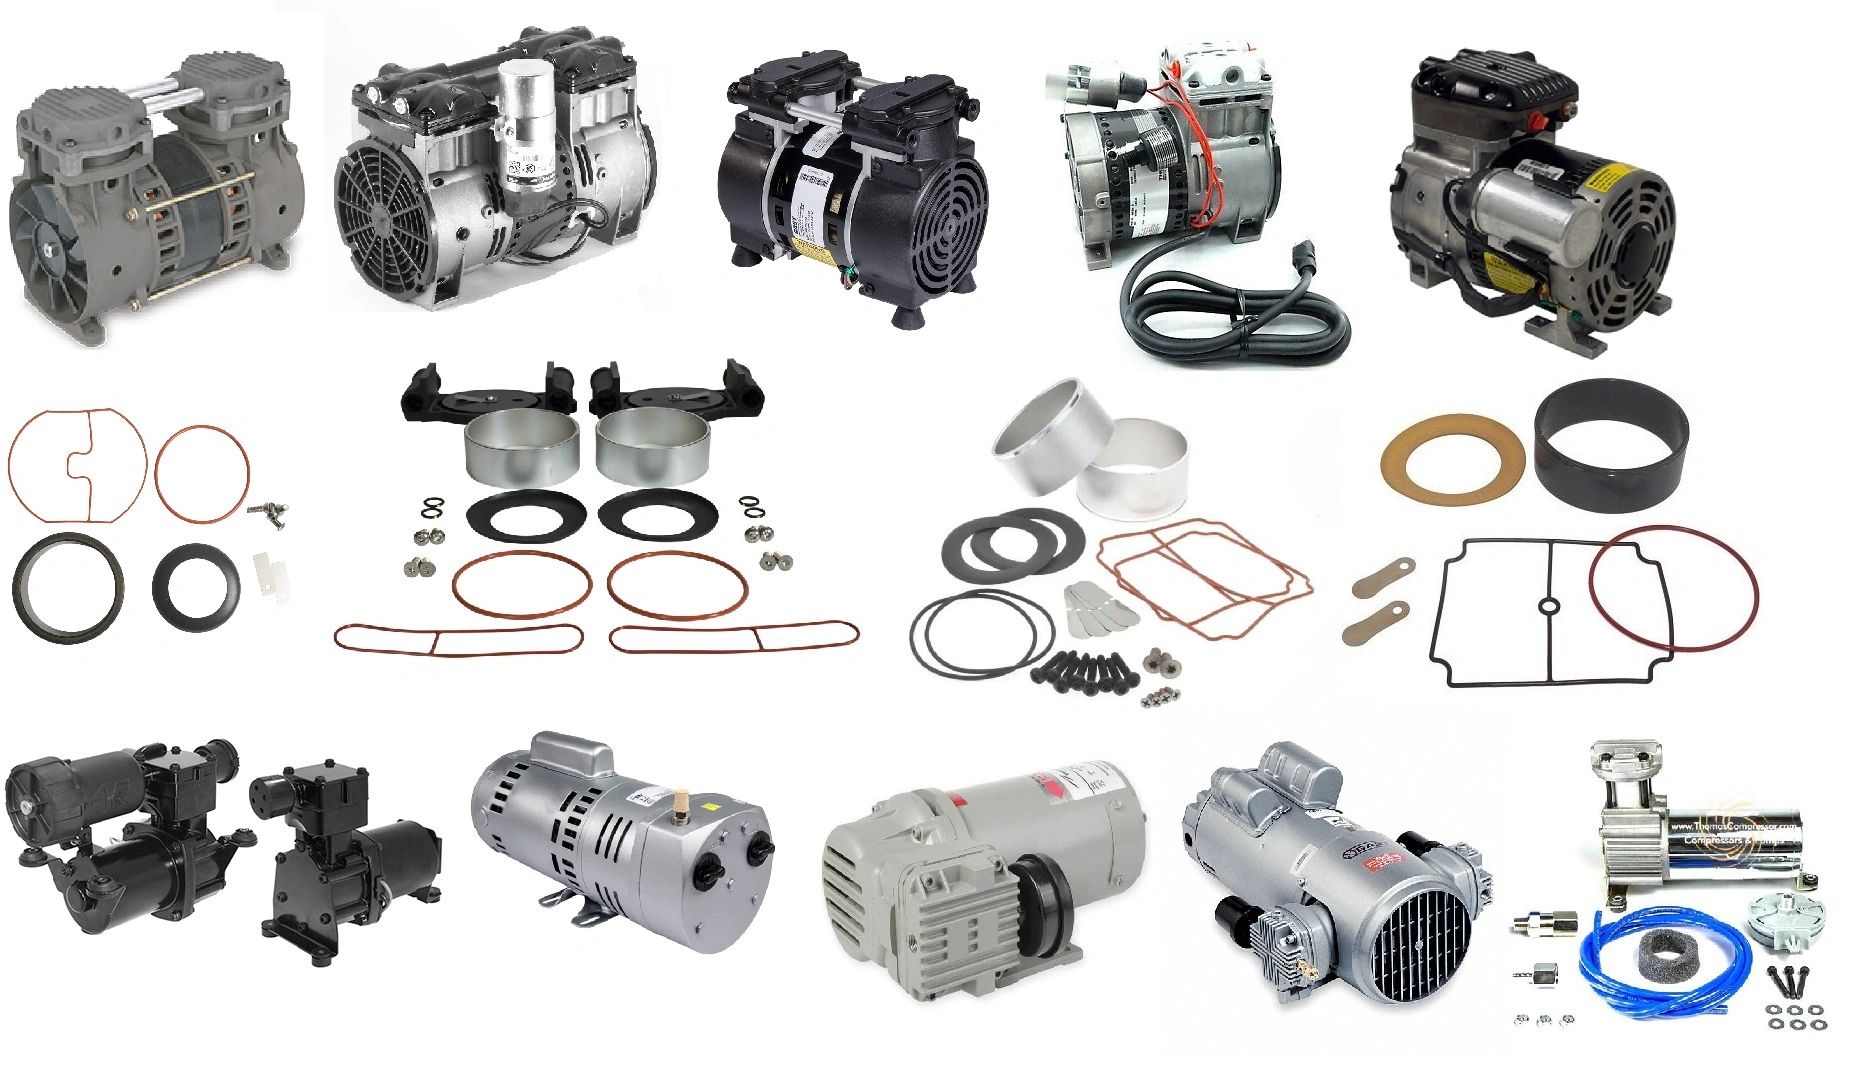 Thomas Compressor - Compressors, Rebuild Kits, Vacuum Pumps, Compressors,  12 Volt Air Compressor, Compressor Rebuild Kits